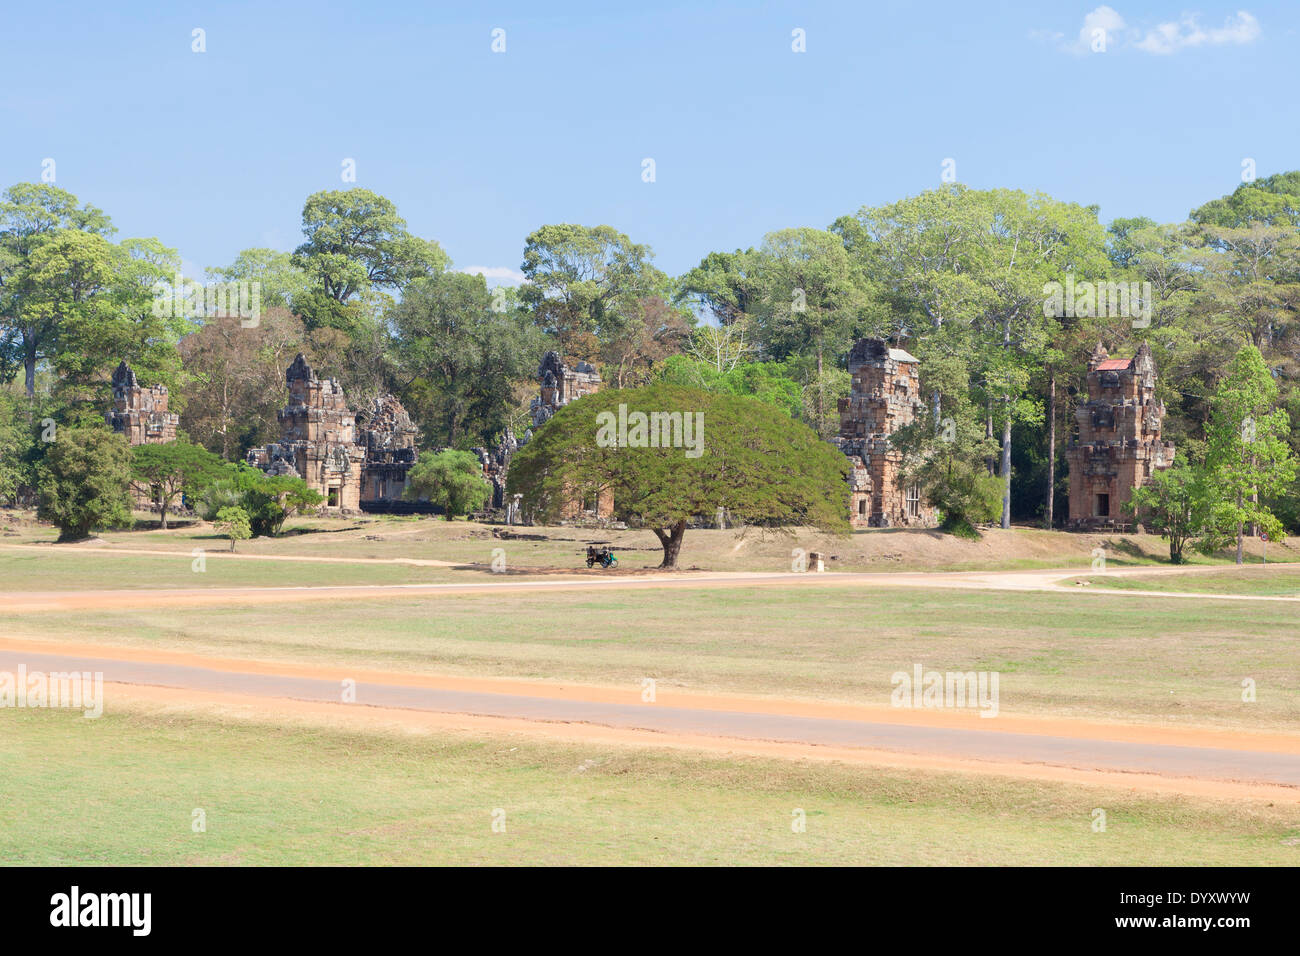 Prasat Suor Prat towers, Angkor Thom, Cambodia Stock Photo